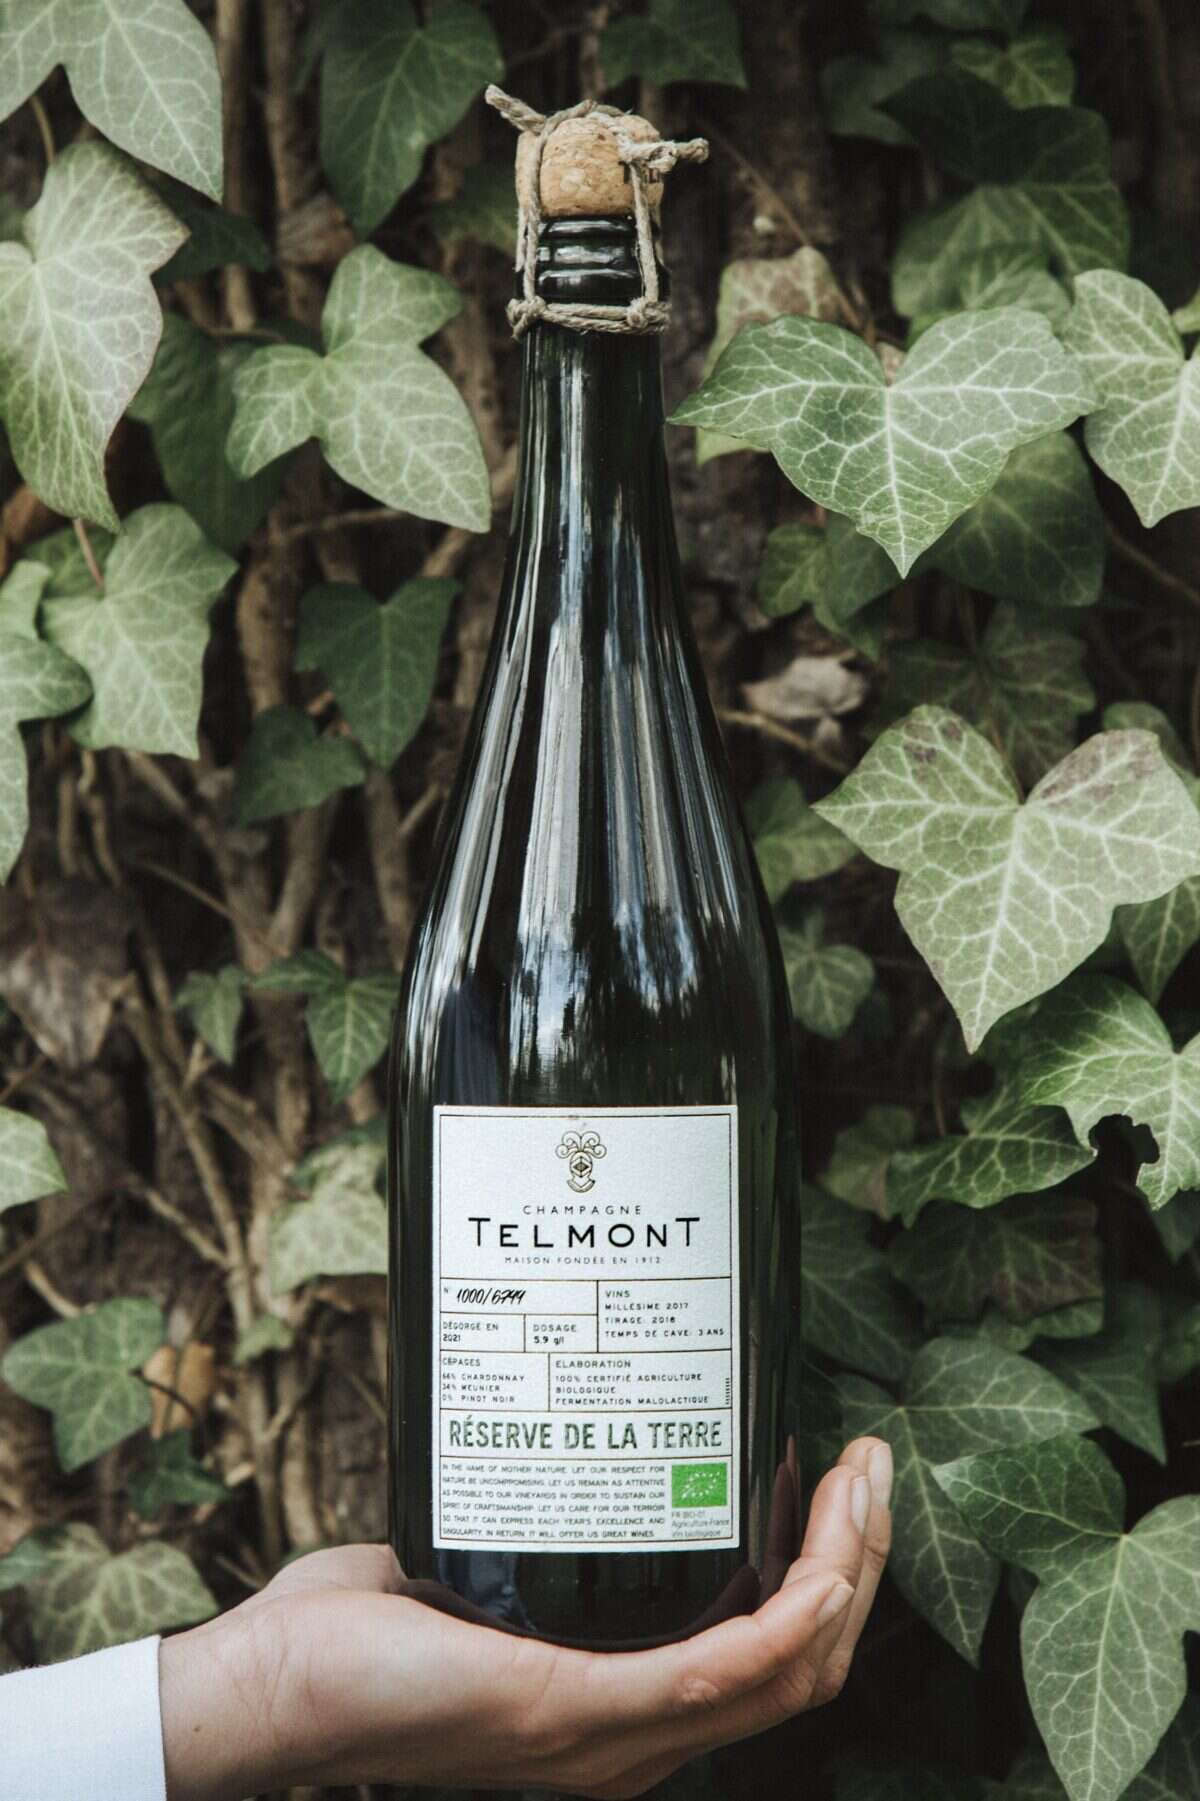 Telmont bottle of champagne